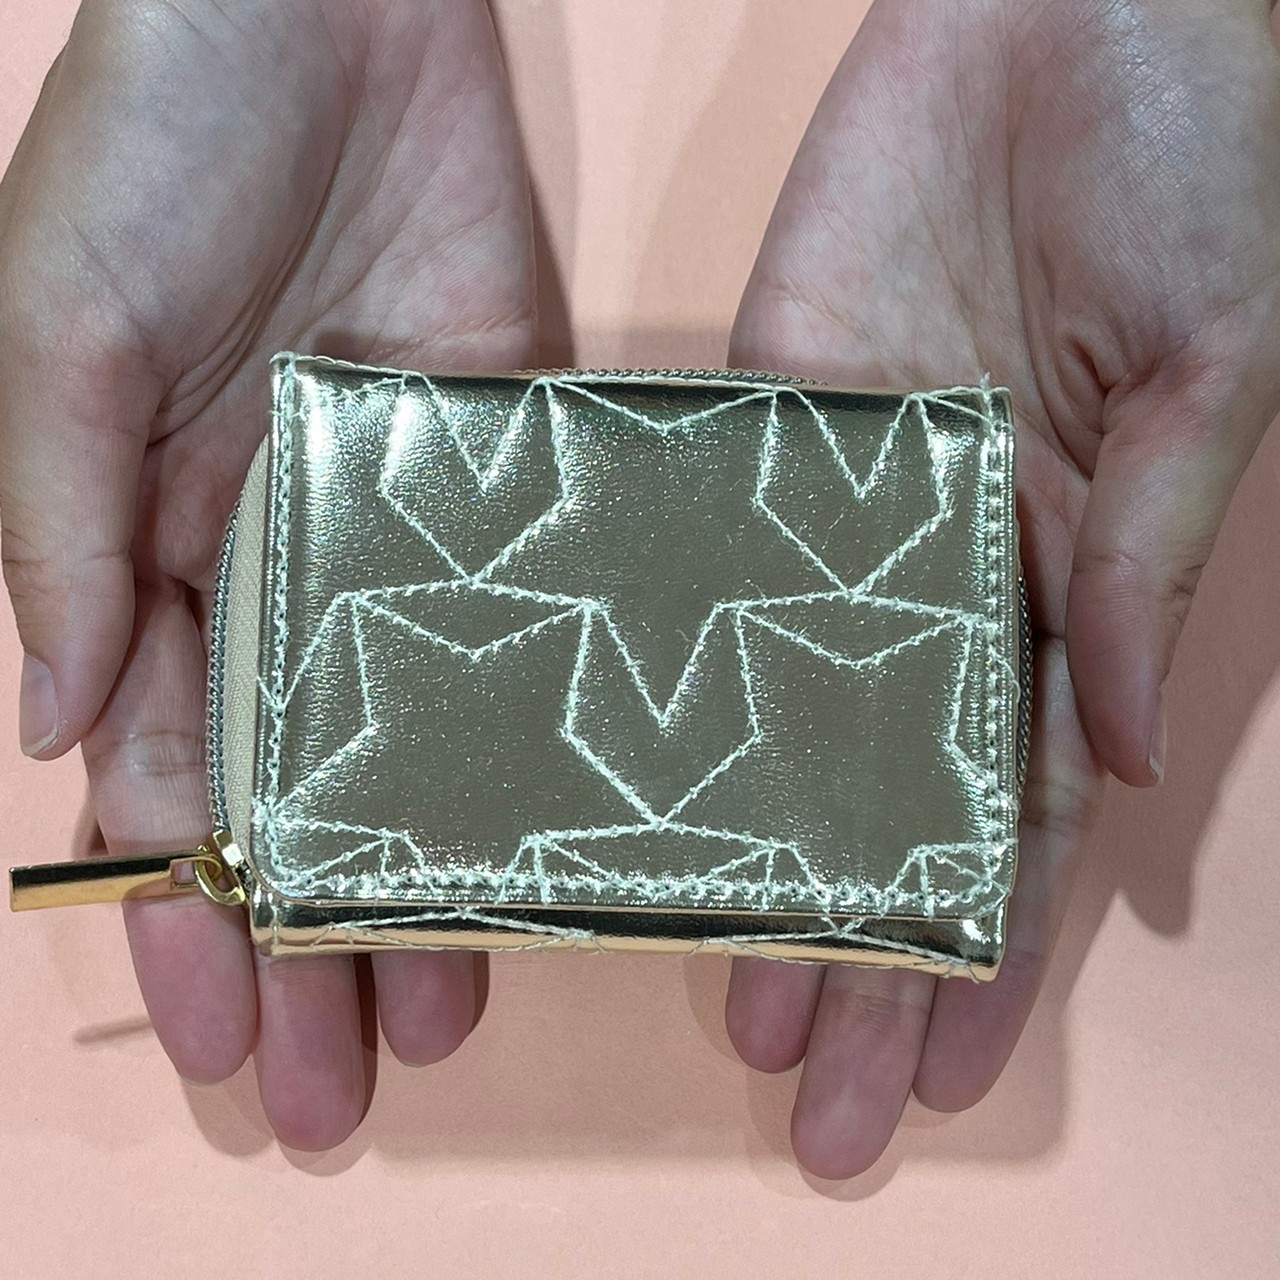 スターキルティングミニ財布を手に持っている画像